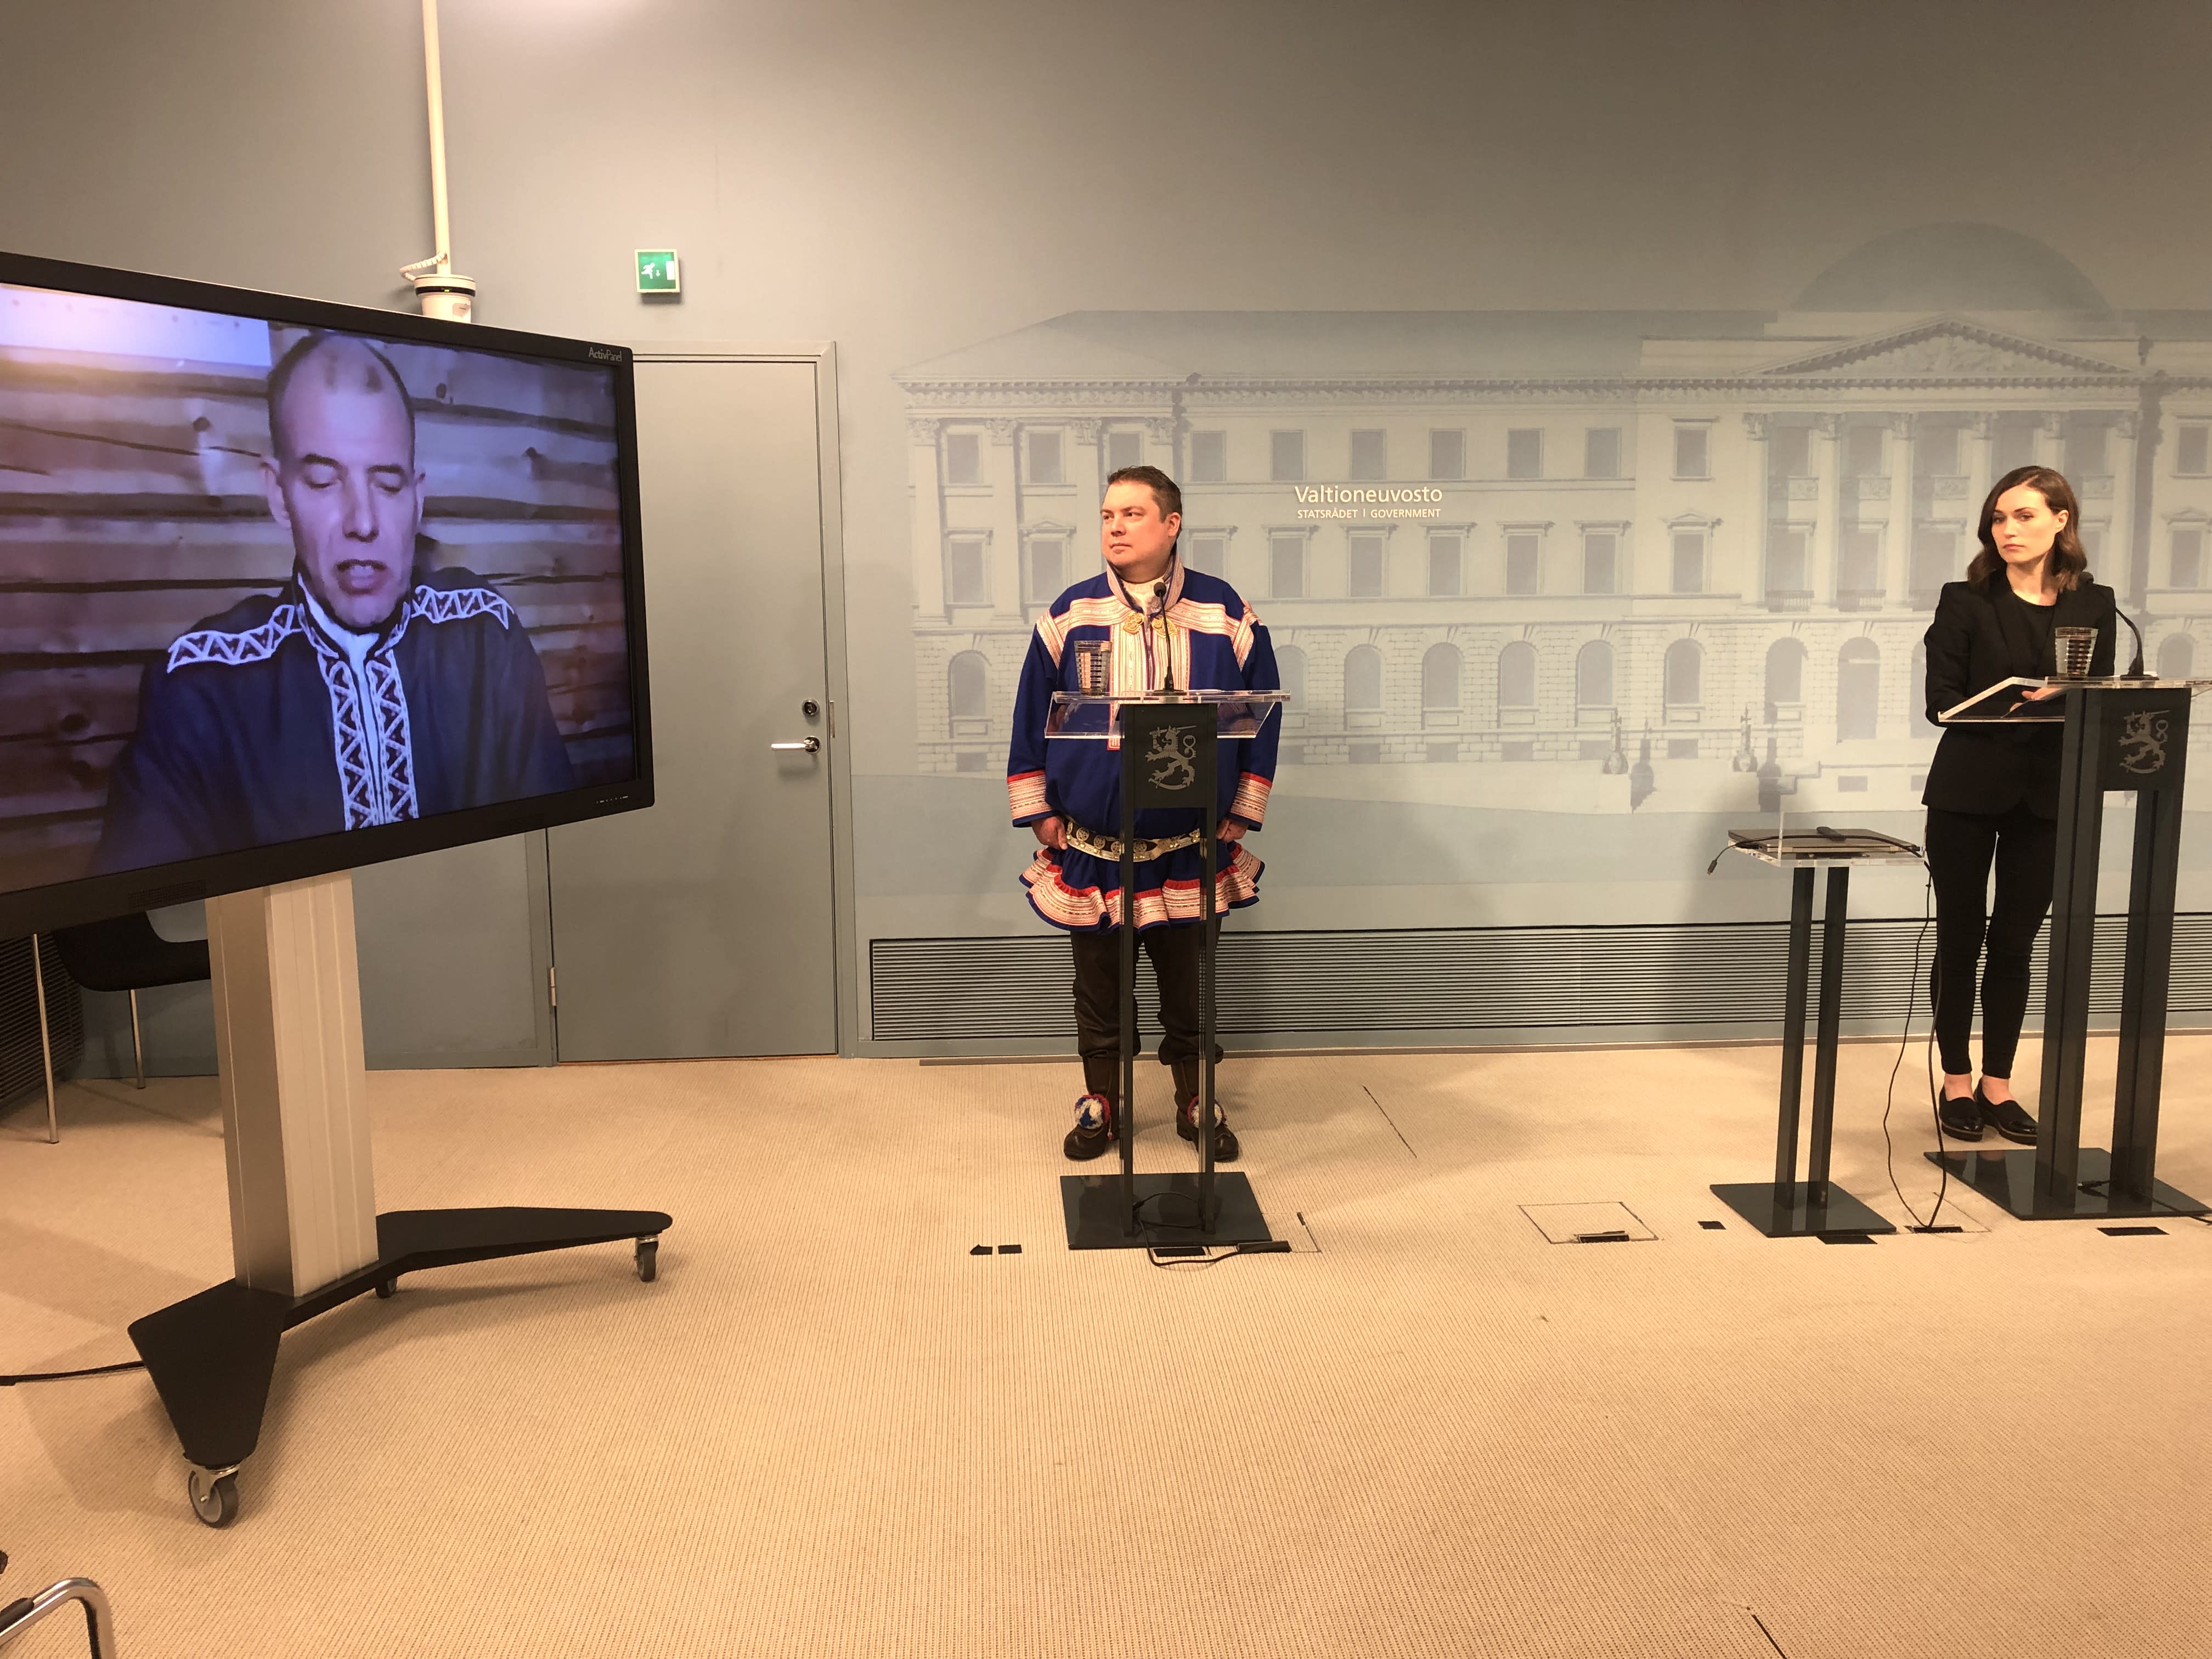 Finnland richtet eine samische Versöhnungskommission ein, um die Ungerechtigkeit der indigenen Völker zu untersuchen